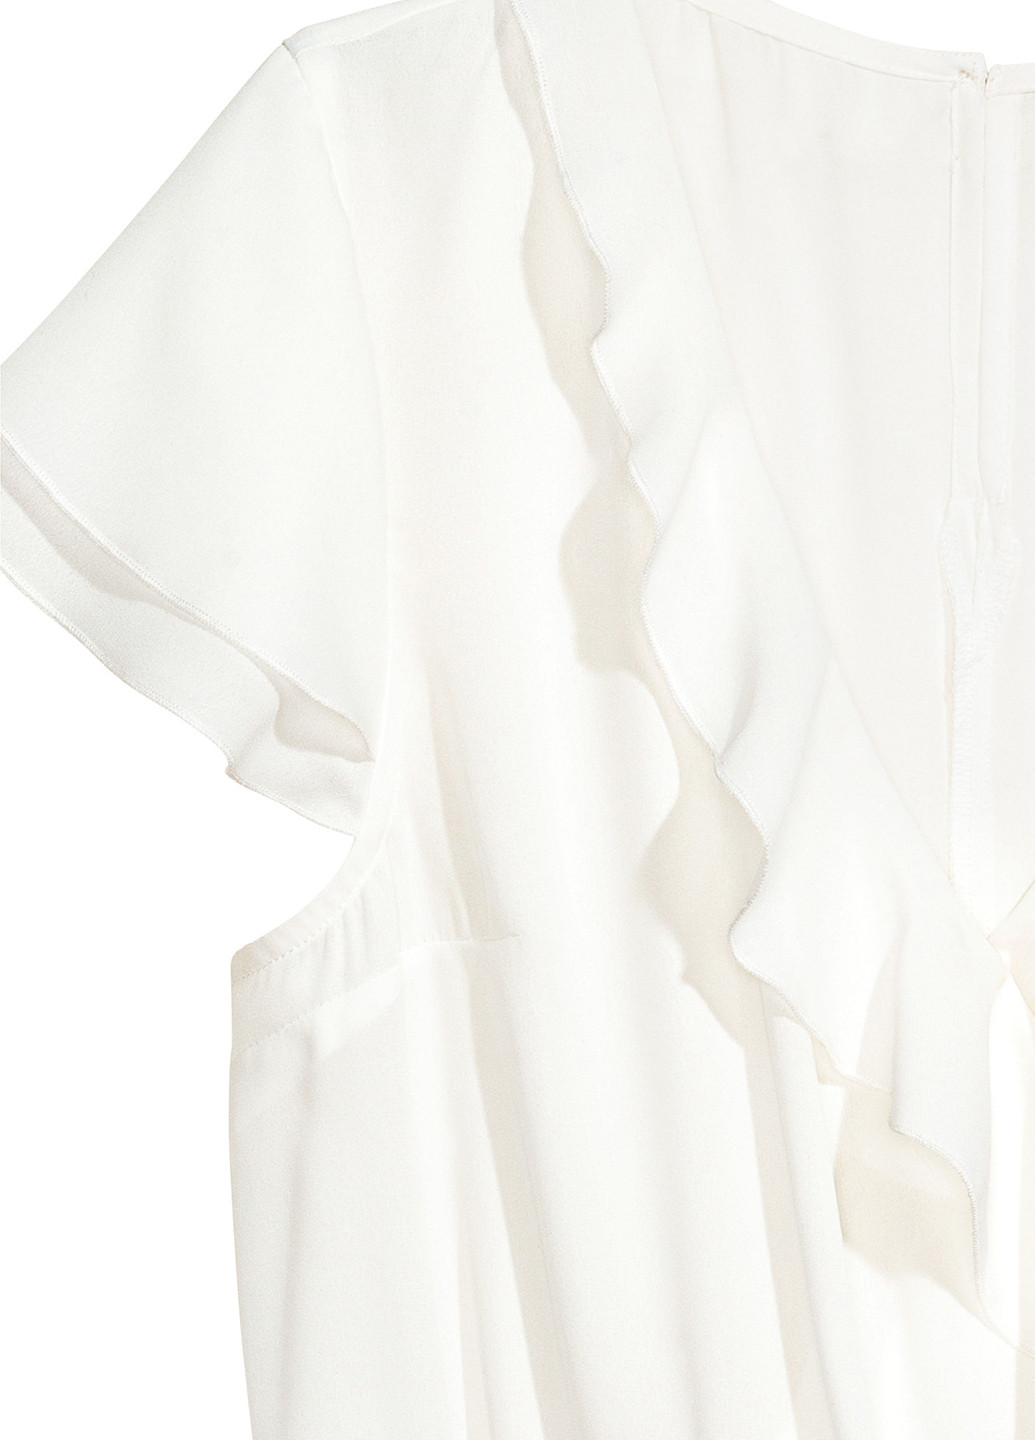 Комбинезон H&M комбинезон-шорты белый кэжуал